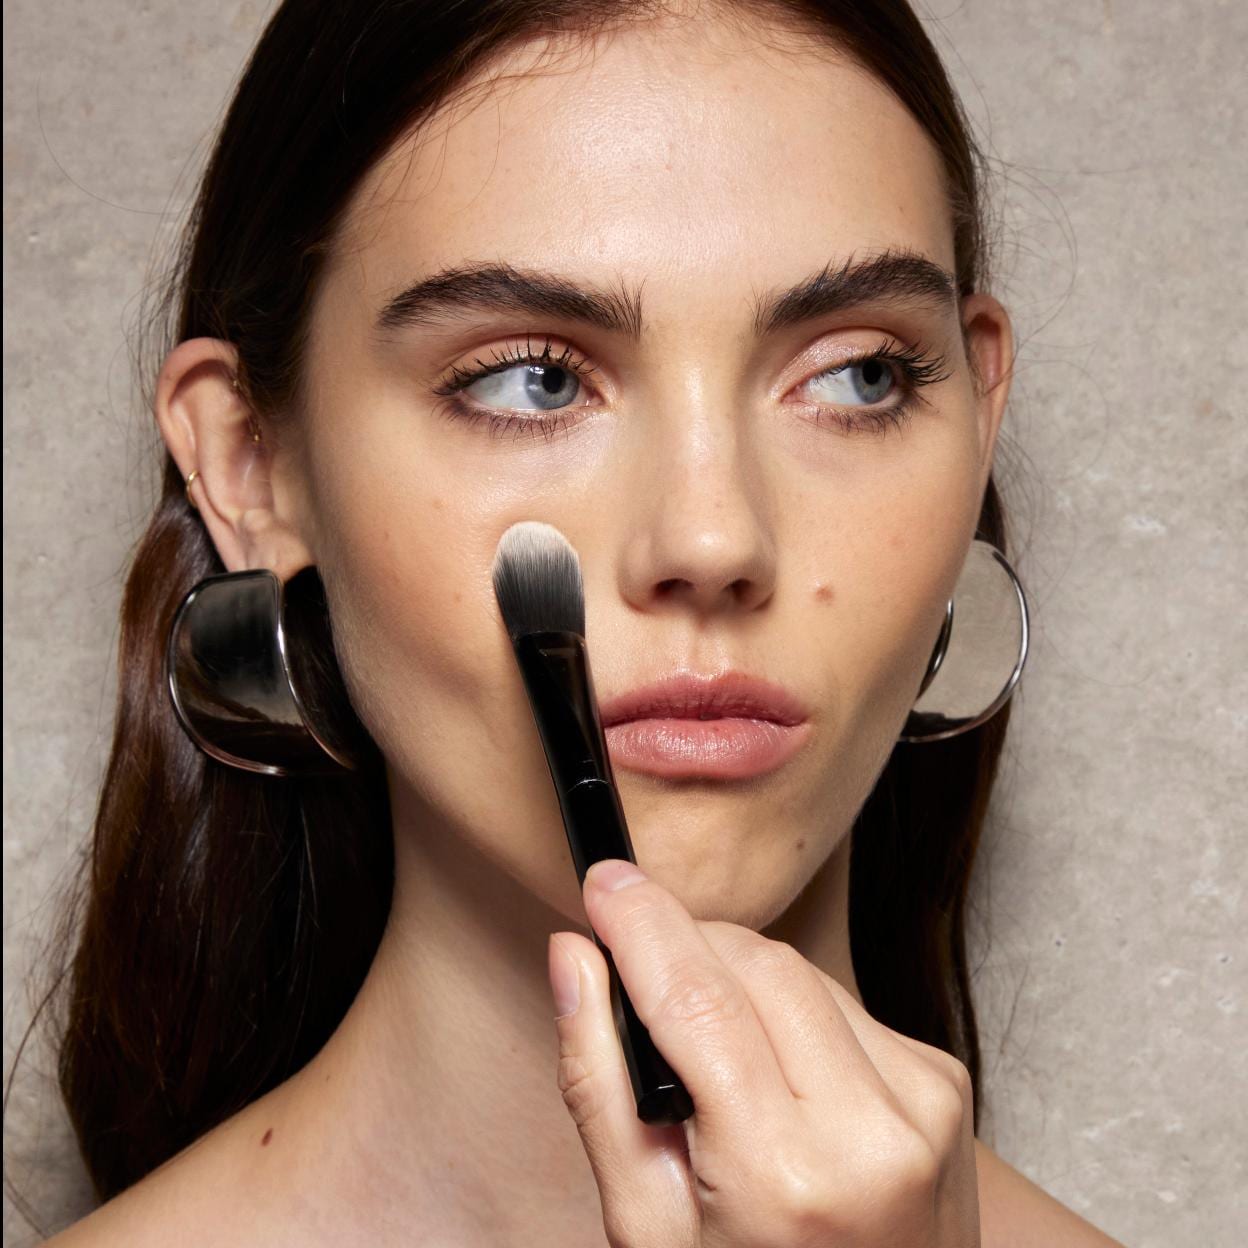 belleza: Qué tipo de brocha usar para cada producto de maquillaje